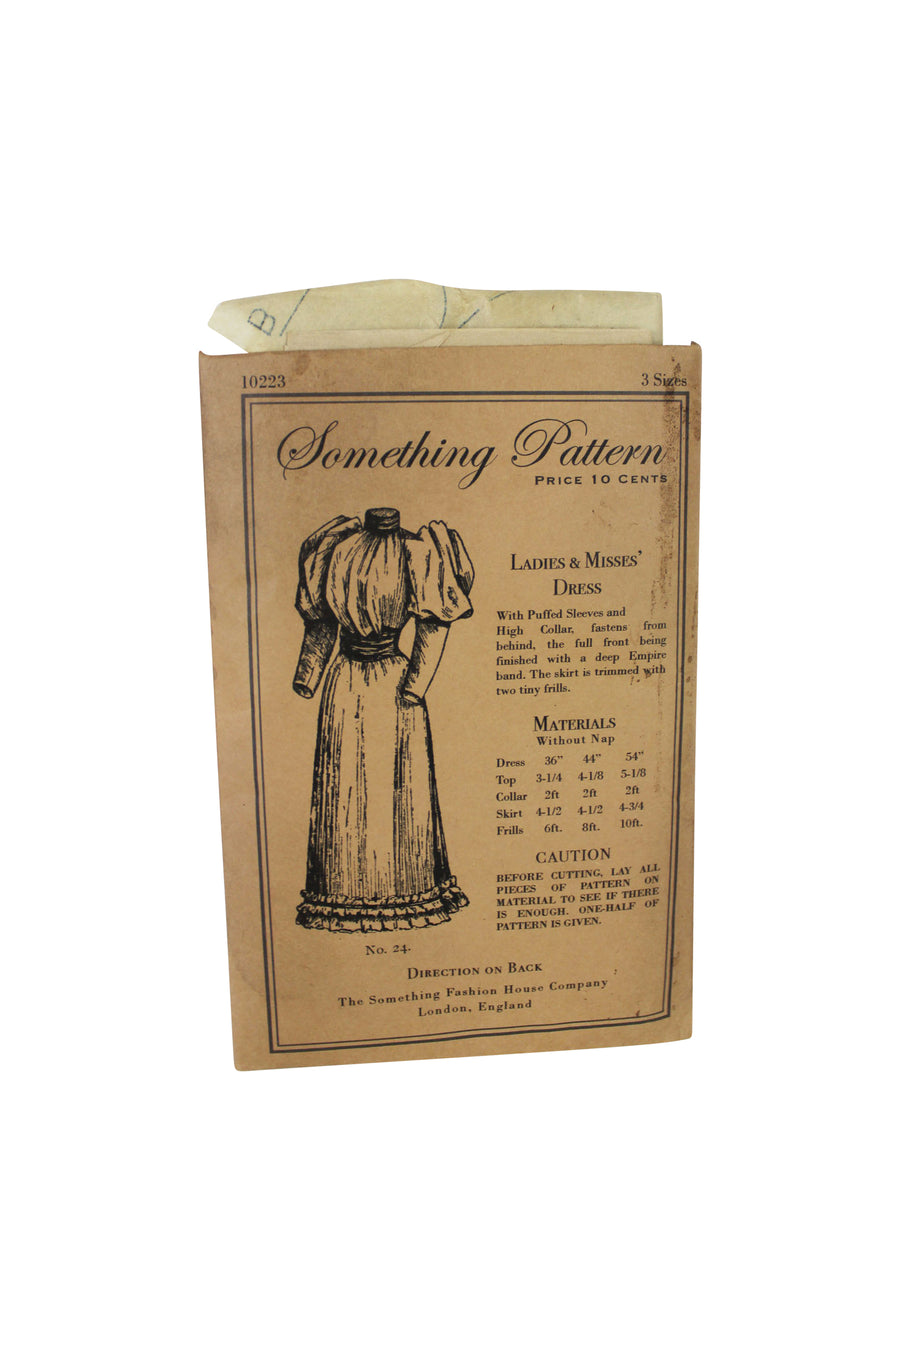 Vintage Sewing Pattern